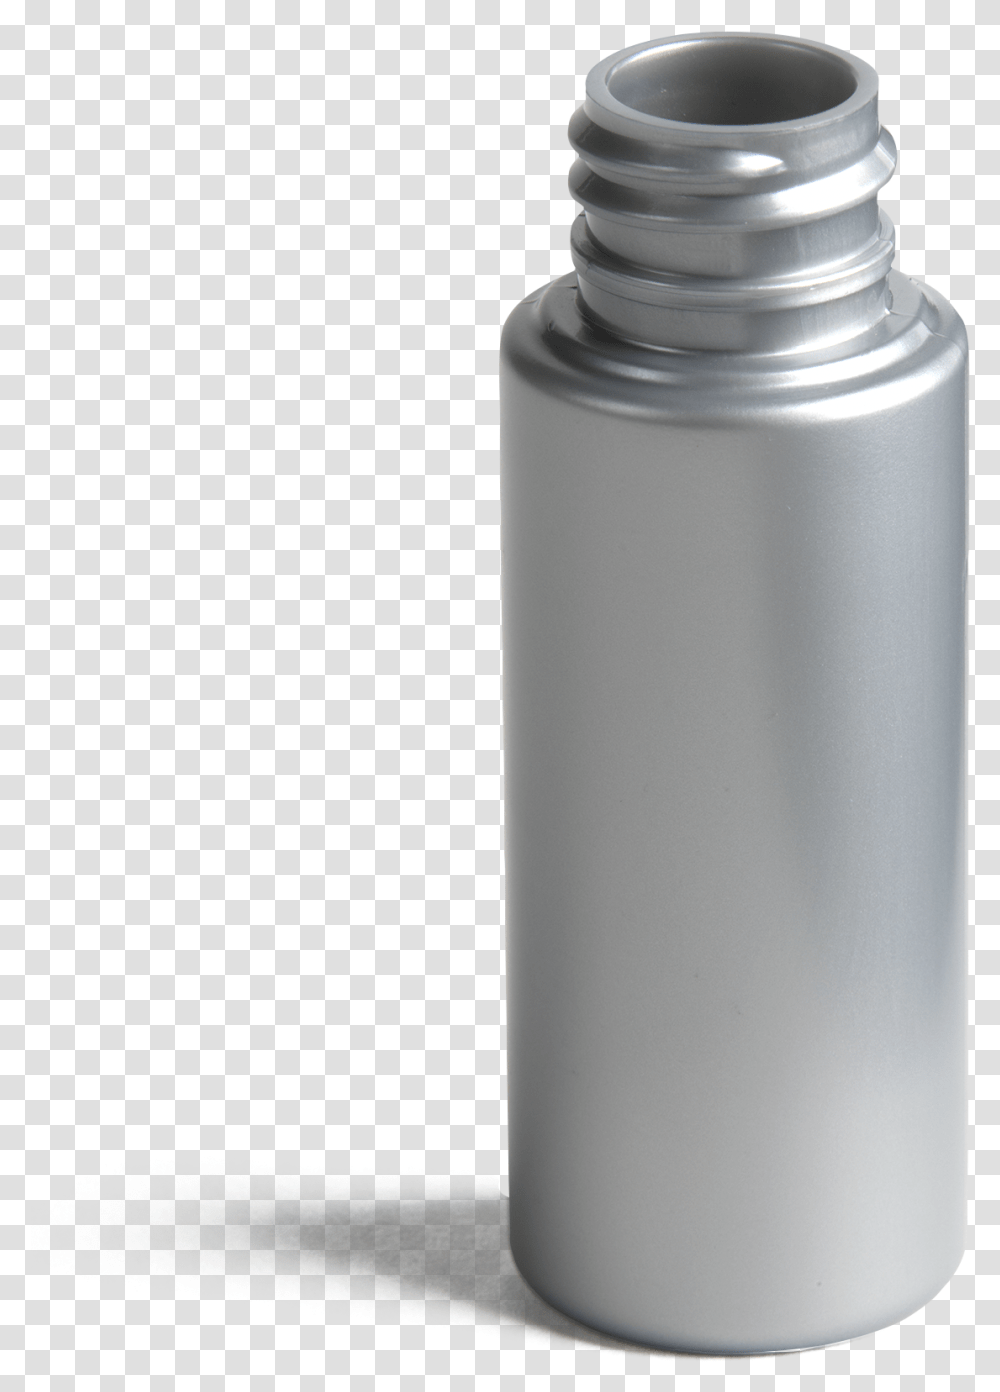 Oz Cylindrical Vial Glass Bottle, Shaker, Milk, Beverage, Drink Transparent Png